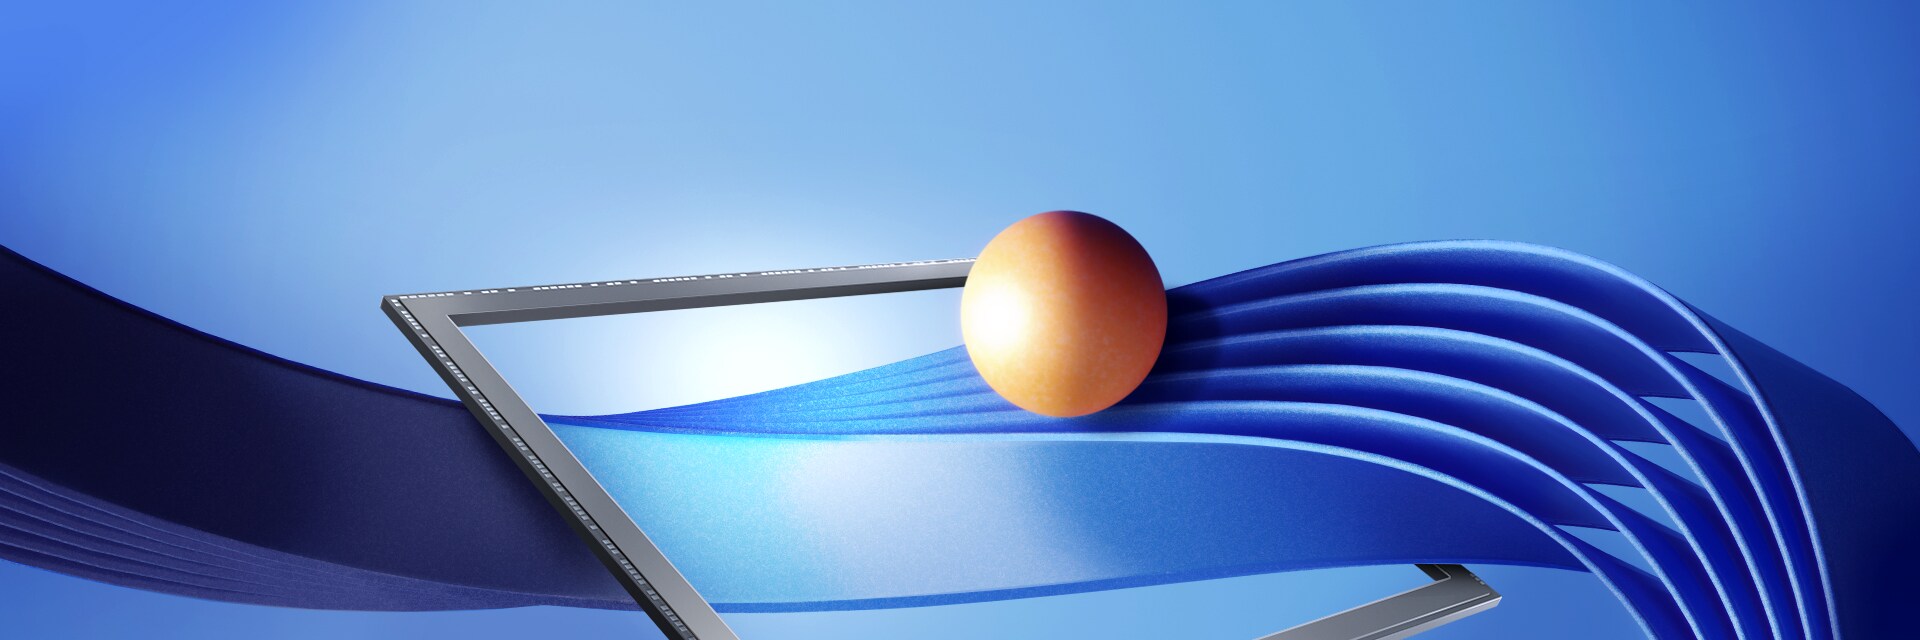 「最先端のピクセルテクノロジー」という文句と共に、センサーから出る金色の球と流れる青い波が表現されたモバイルイメージセンサーISOCELL GNJのプロモーション画像。